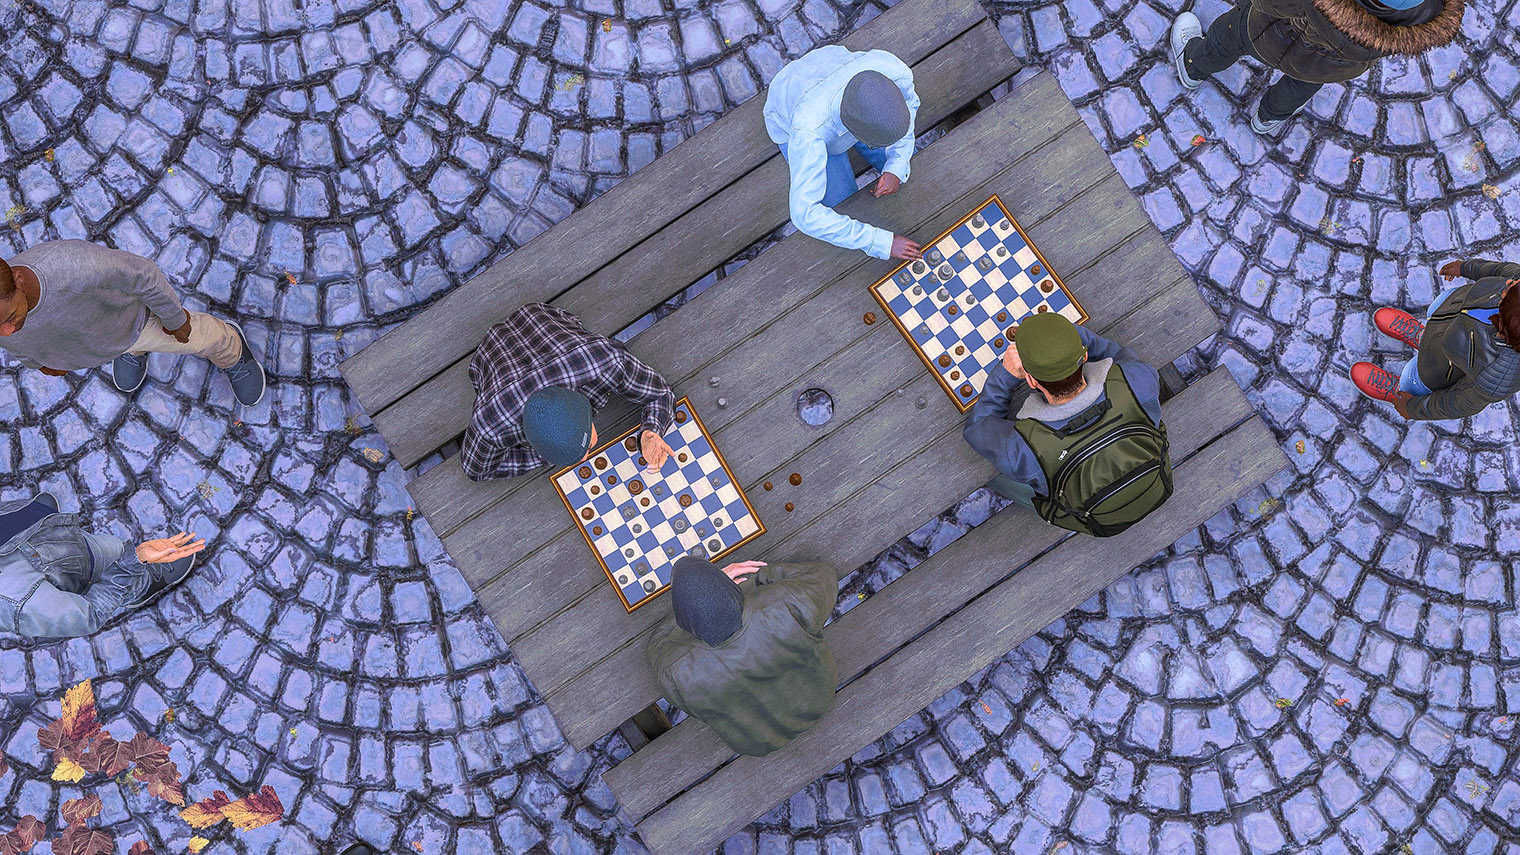 Местные жители занимаются спортом и играют в шахматы прямо под автострадой